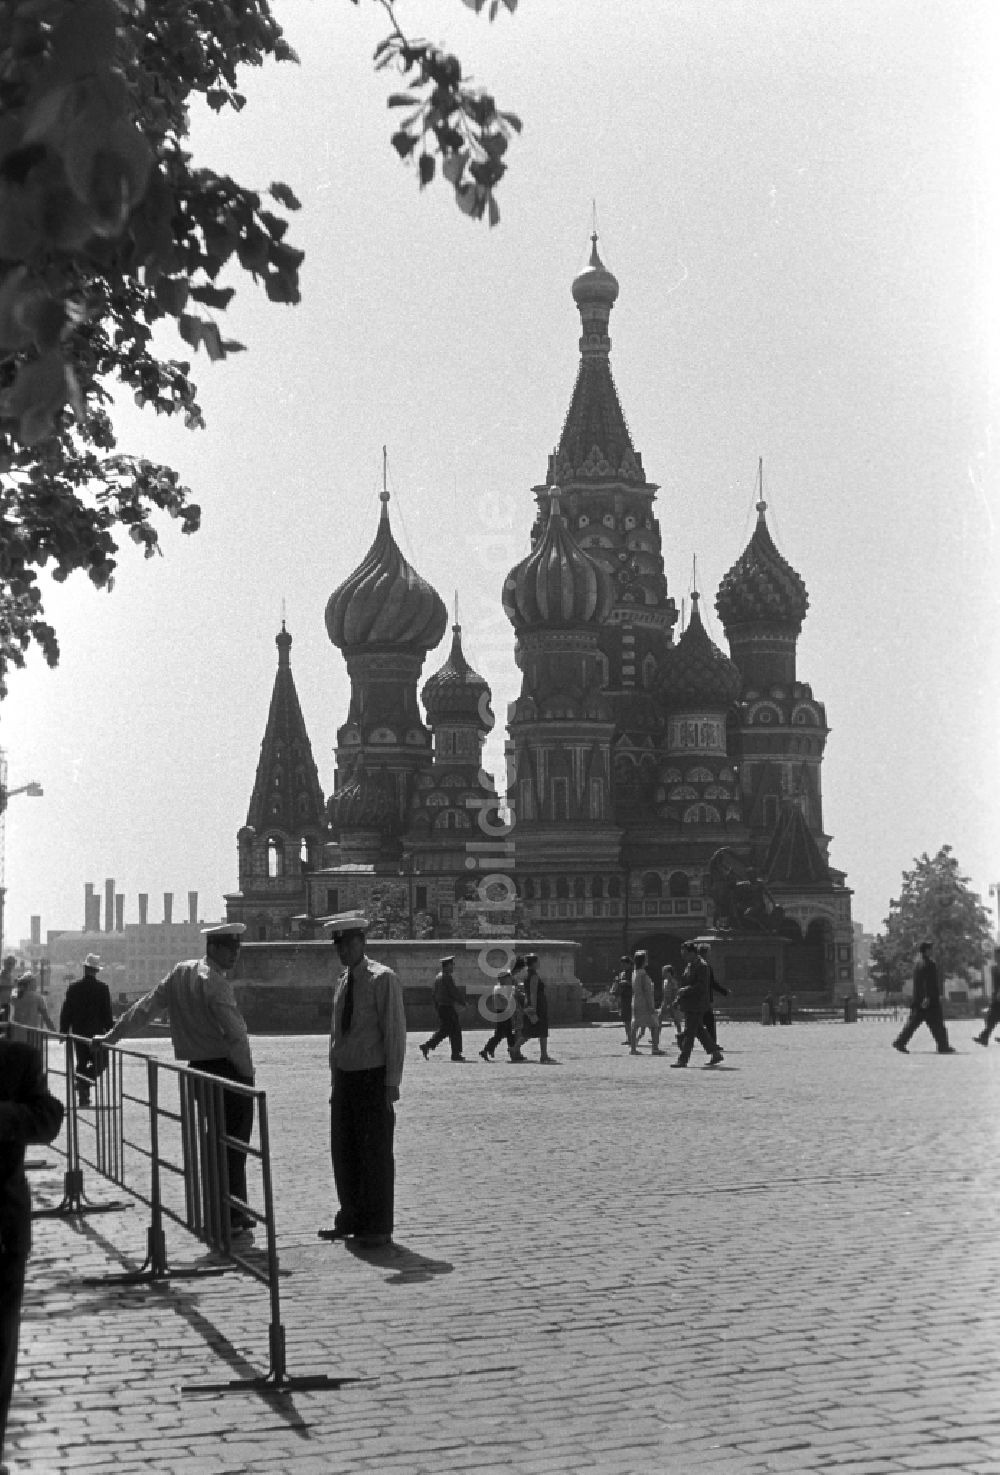 Moskau: Blick auf die Basilius - Kathedrale am Roten Platz in Moskau